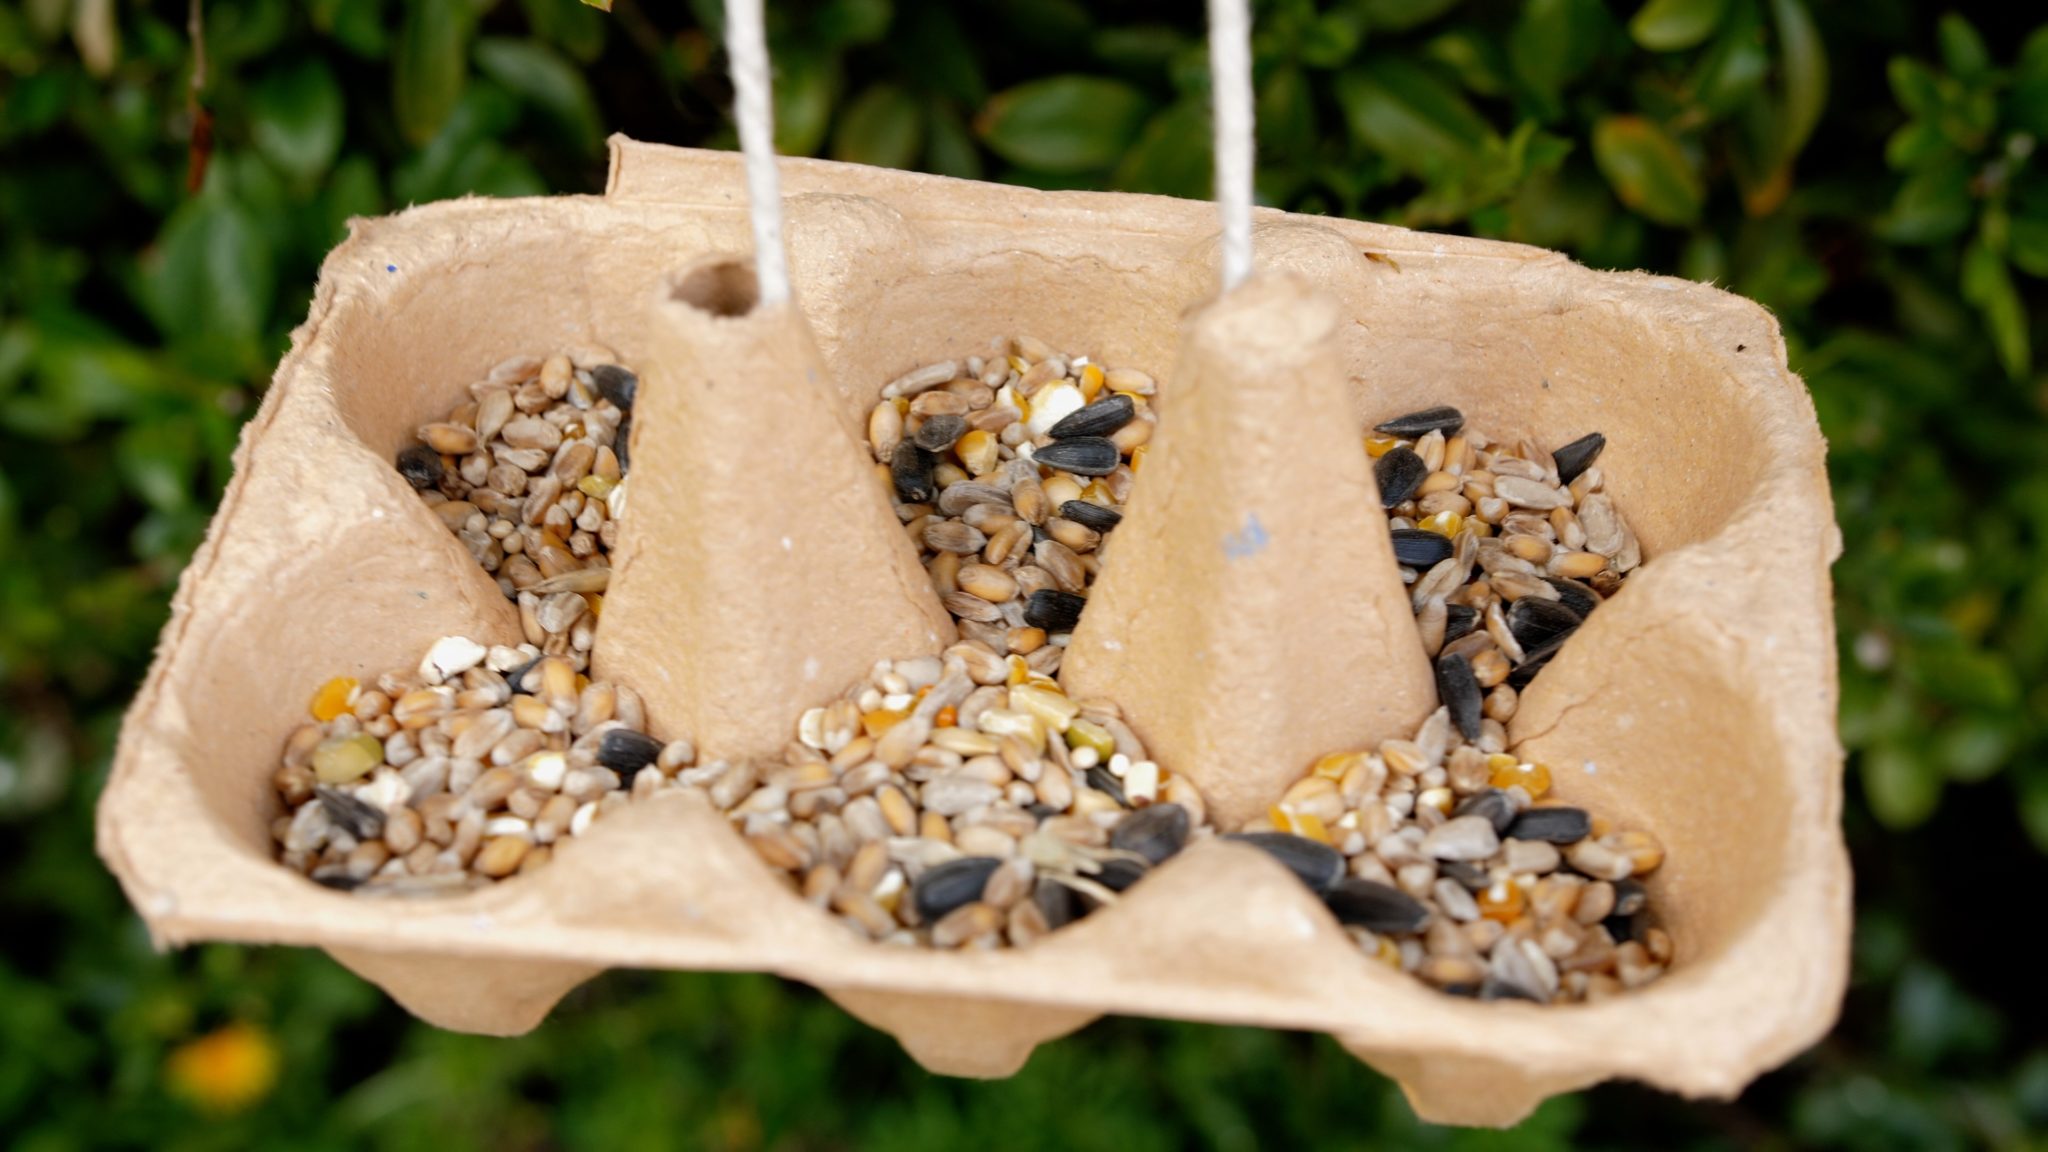 An egg box bird feeder filled with bird seed